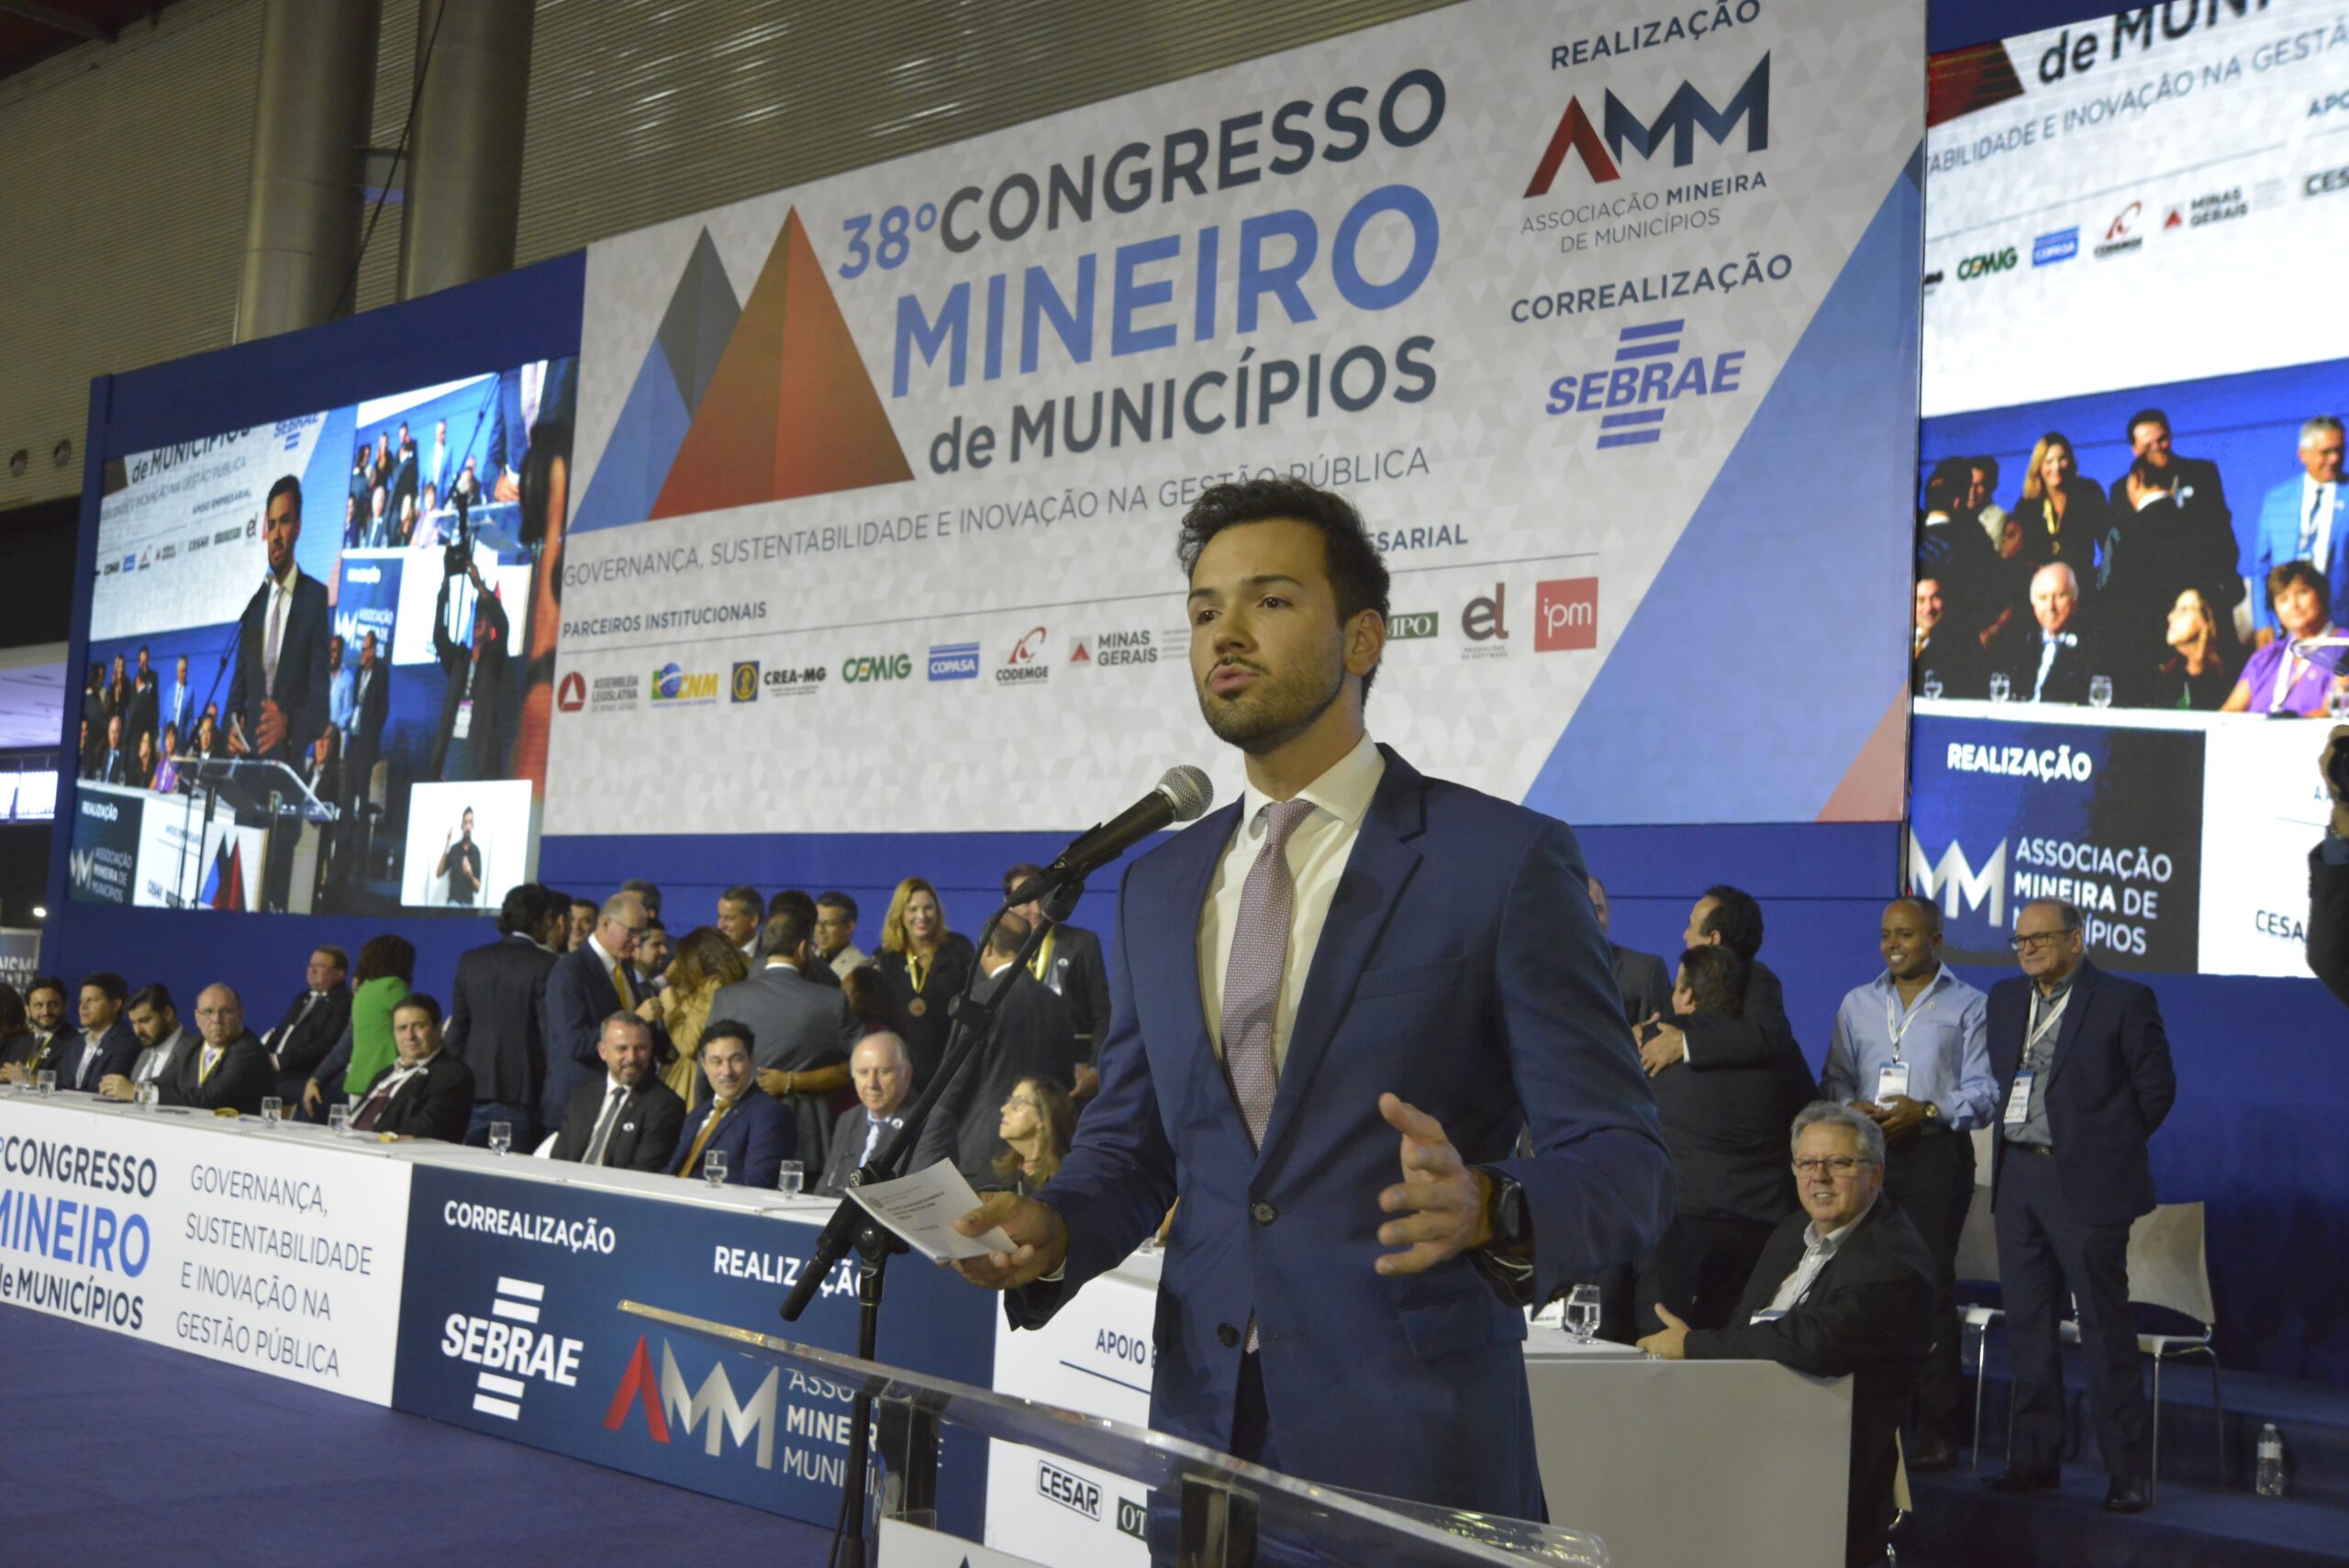 Governador em exercício sanciona projeto de lei que beneficia mais de 780 municípios mineiros